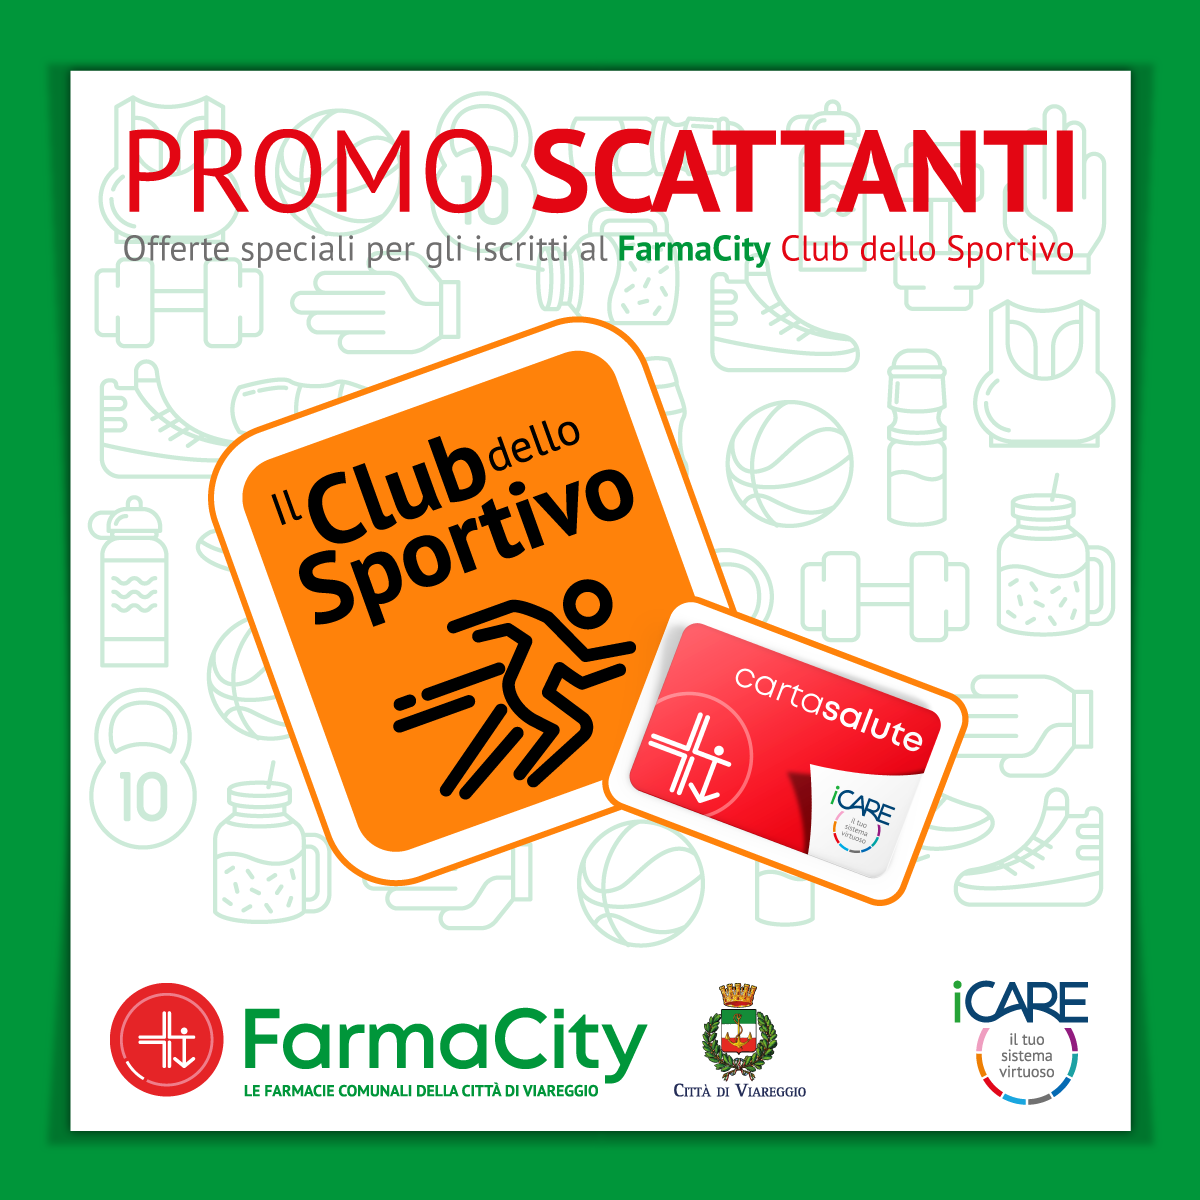 Club dello Sportivo: Promo Scattanti